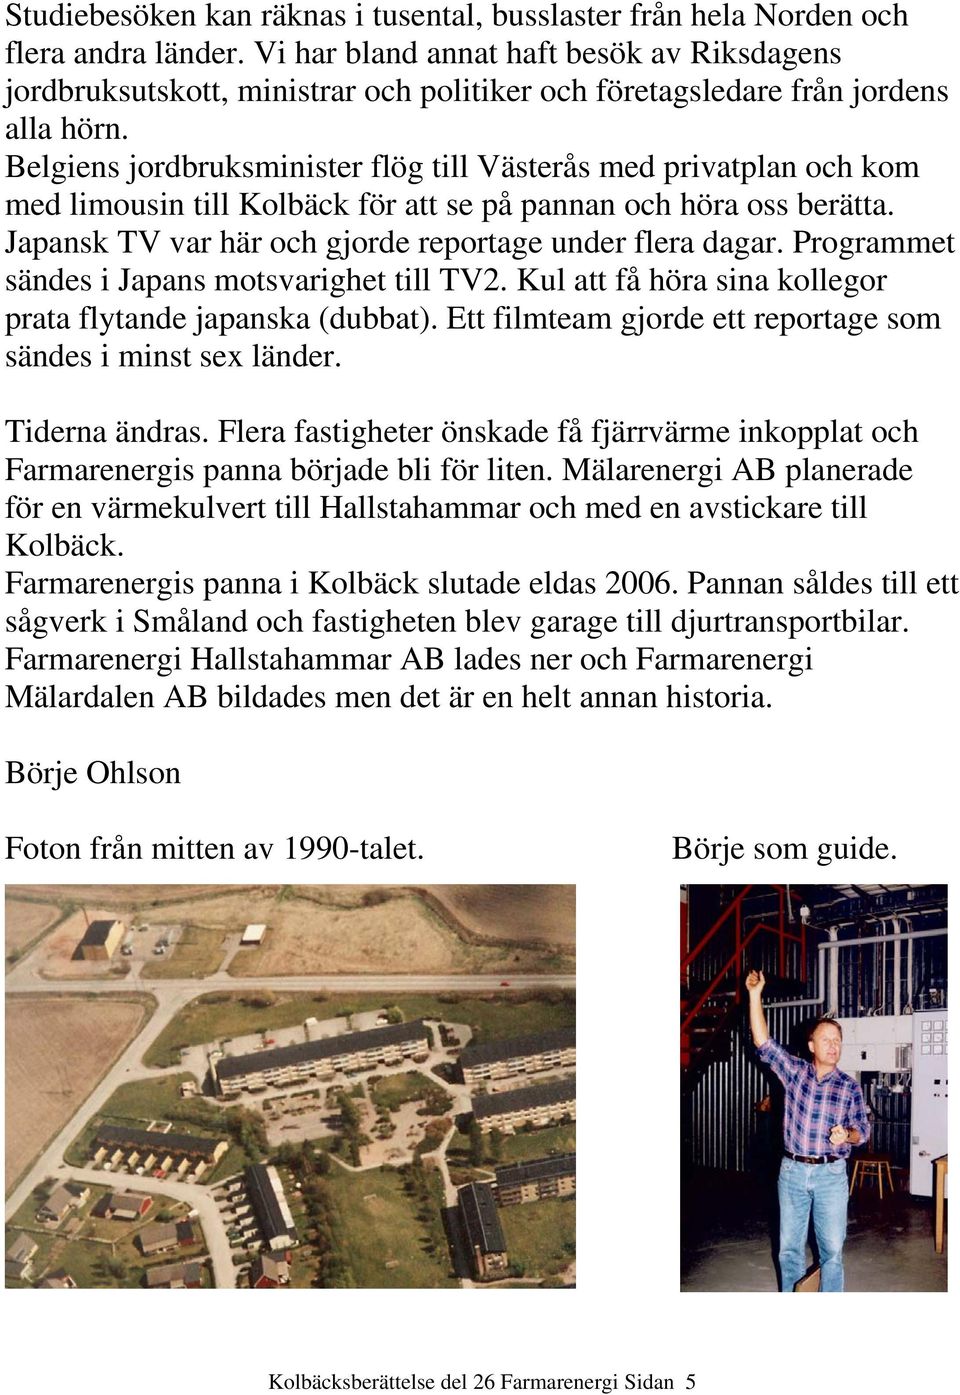 Belgiens jordbruksminister flög till Västerås med privatplan och kom med limousin till Kolbäck för att se på pannan och höra oss berätta. Japansk TV var här och gjorde reportage under flera dagar.